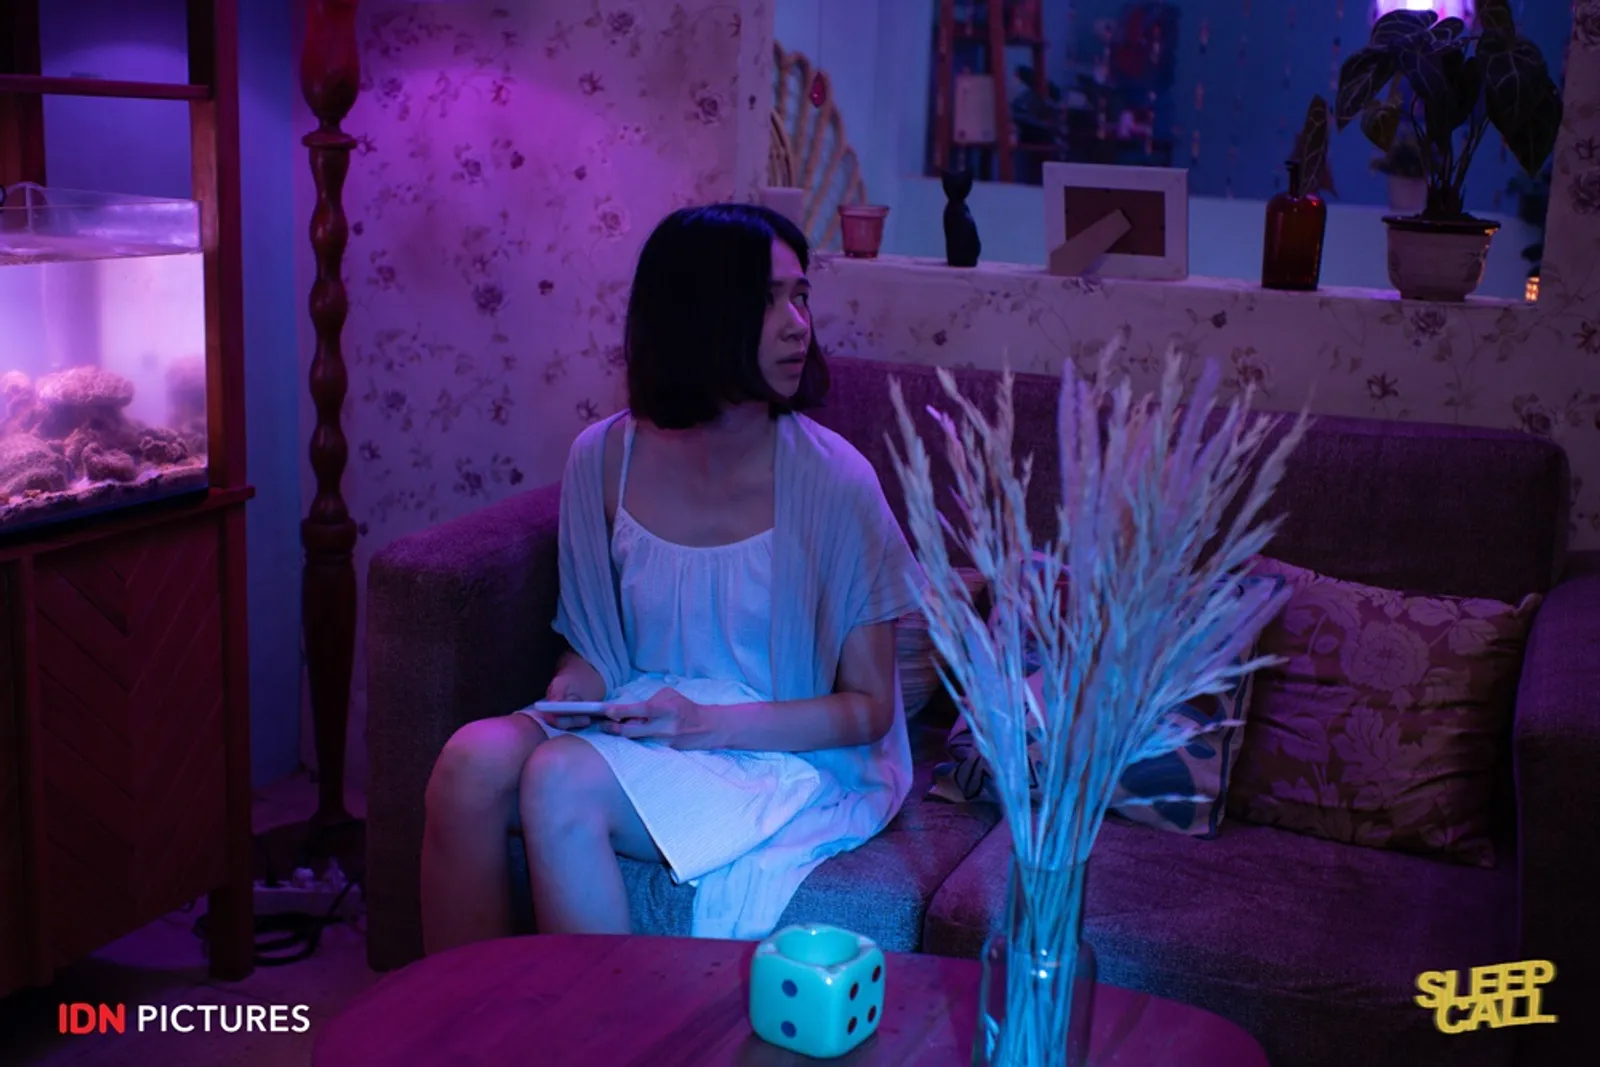 7+ Isu Sosial yang Diangkat dalam Film 'Sleep Call'